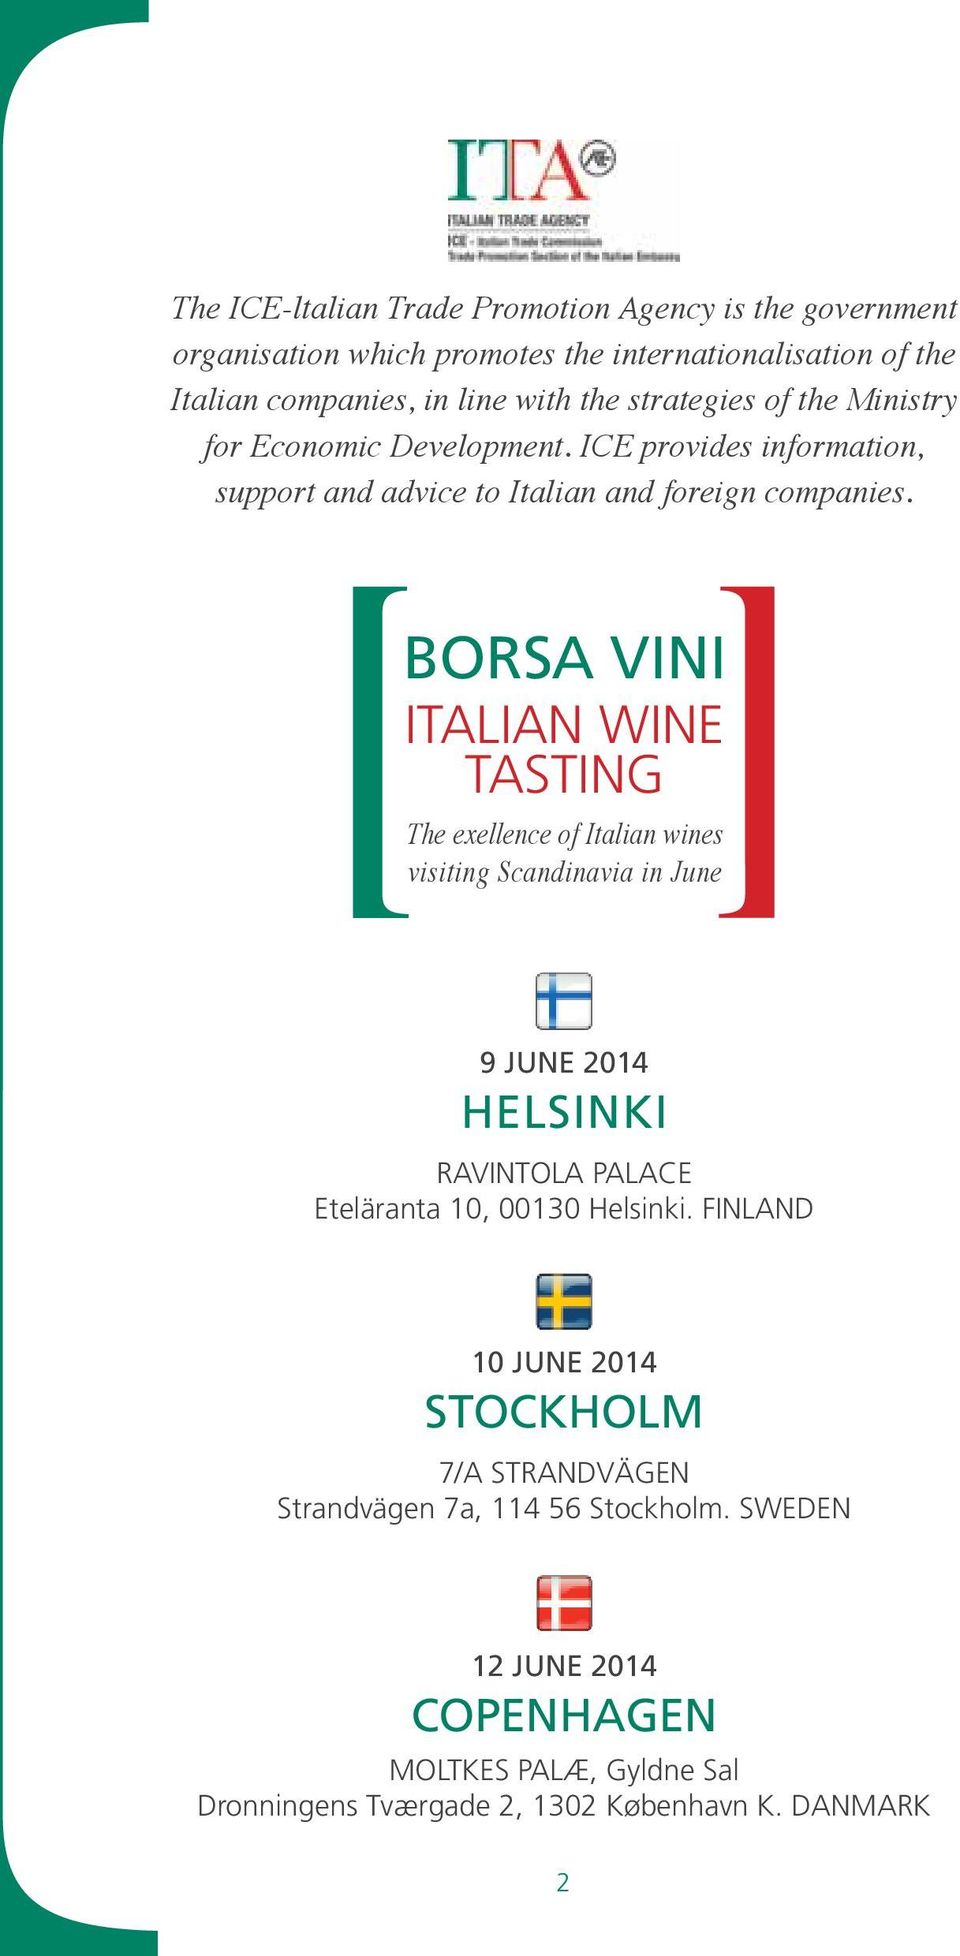 Borsa Vini Italian wine tasting the exellence of Italian wines visiting Scandinavia in June 9 June 2014 Helsinki Ravintola Palace Eteläranta 10, 00130